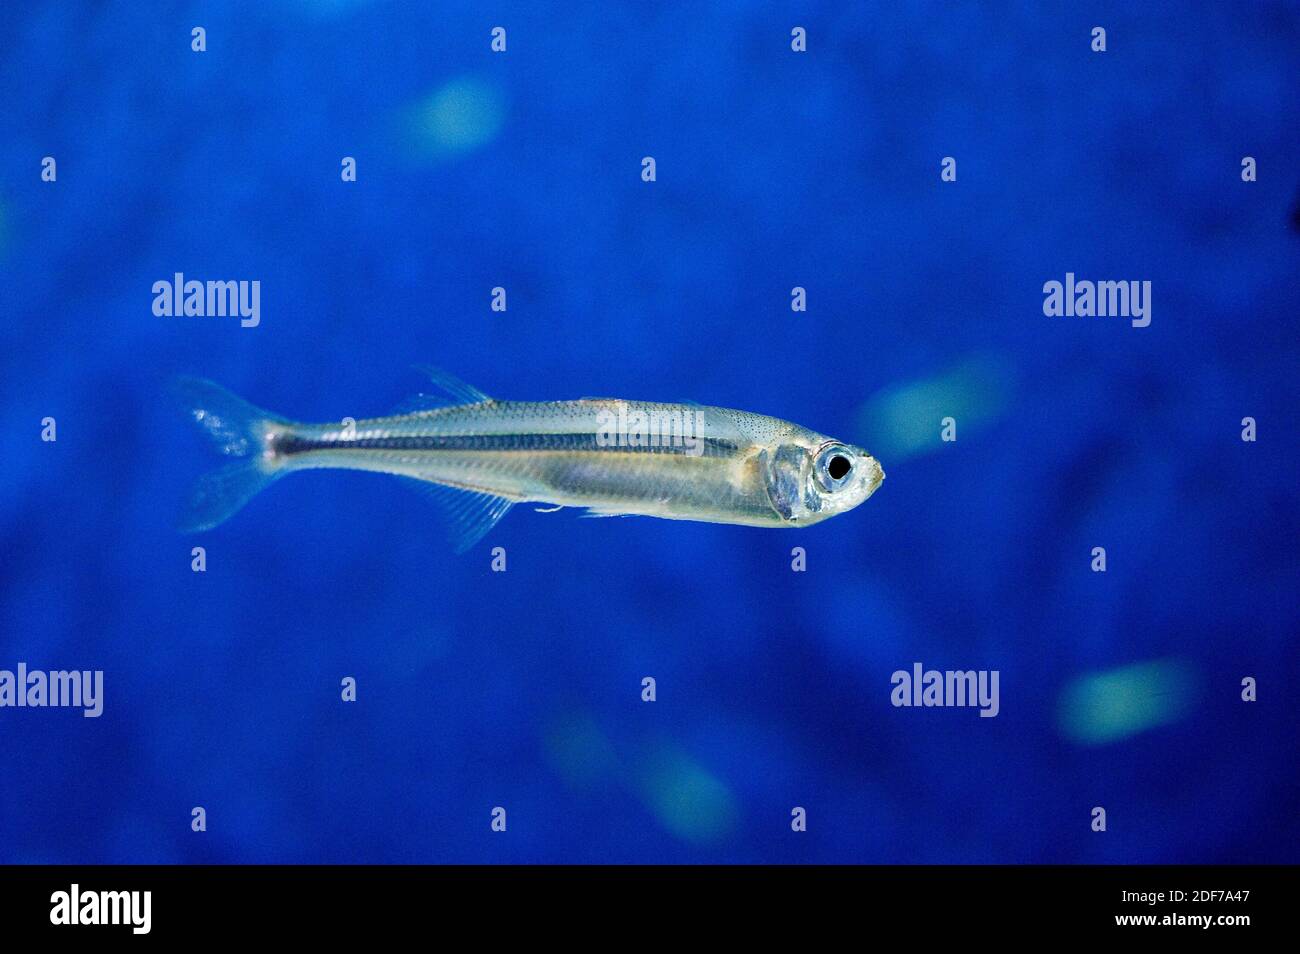 La anchoa europea (Engraulis encrasicolus) es un pez marino nativo del Mar Mediterráneo y de las costas de Europa y África. Foto de stock